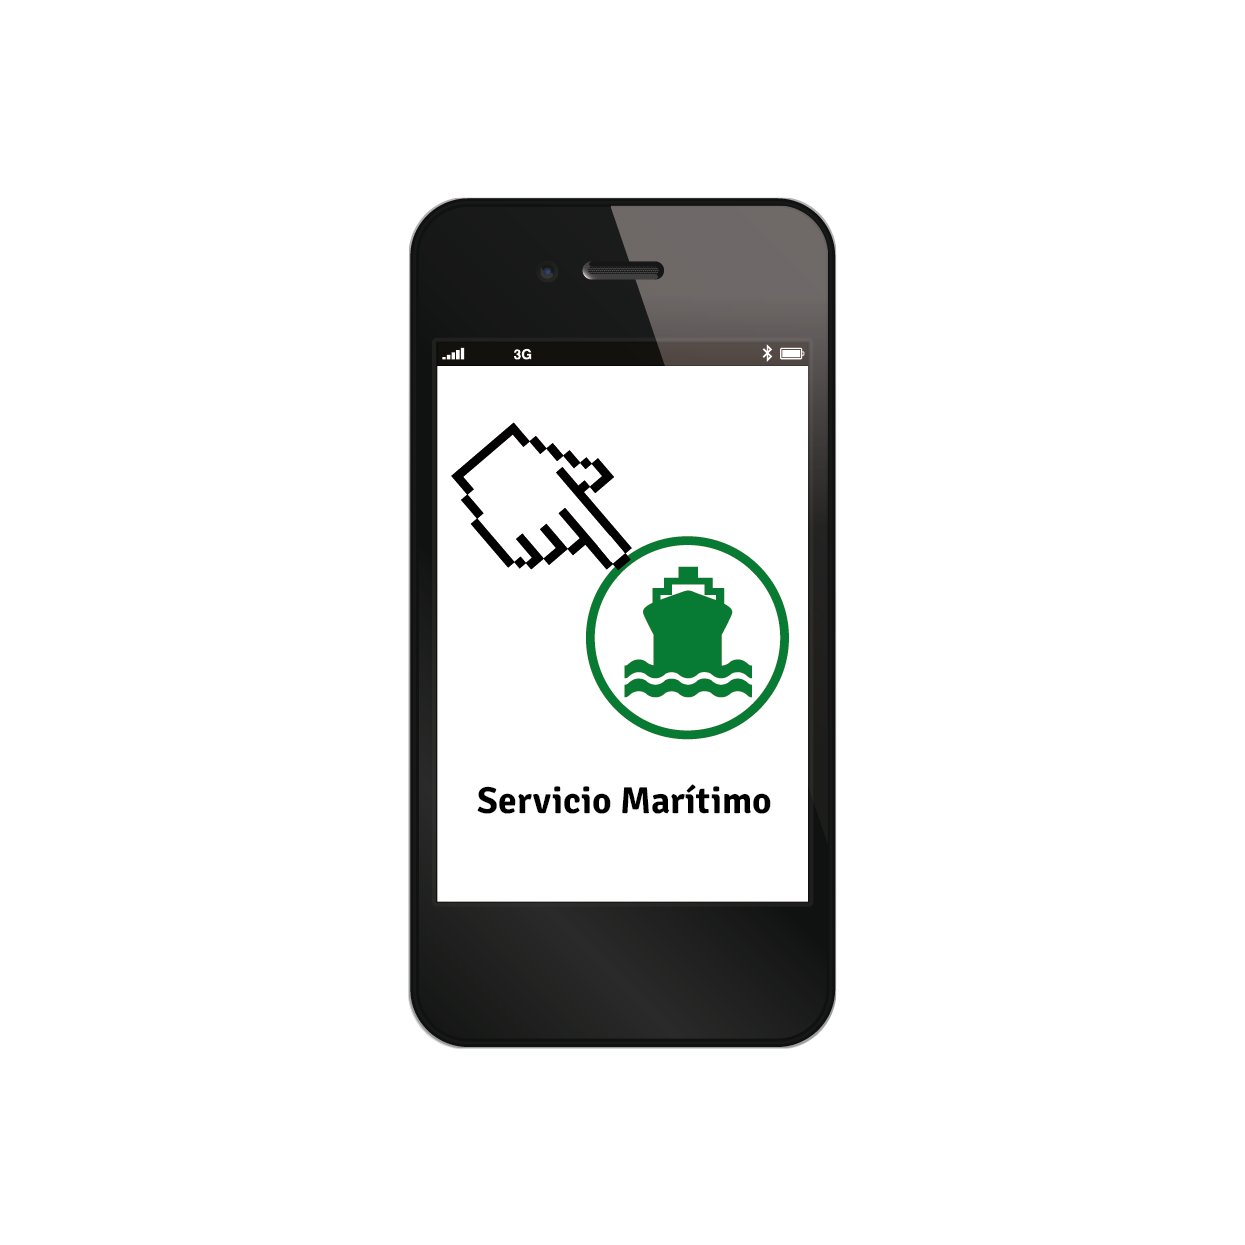 Nueva aplicación gratuita para móvil con información del servicio marítimo